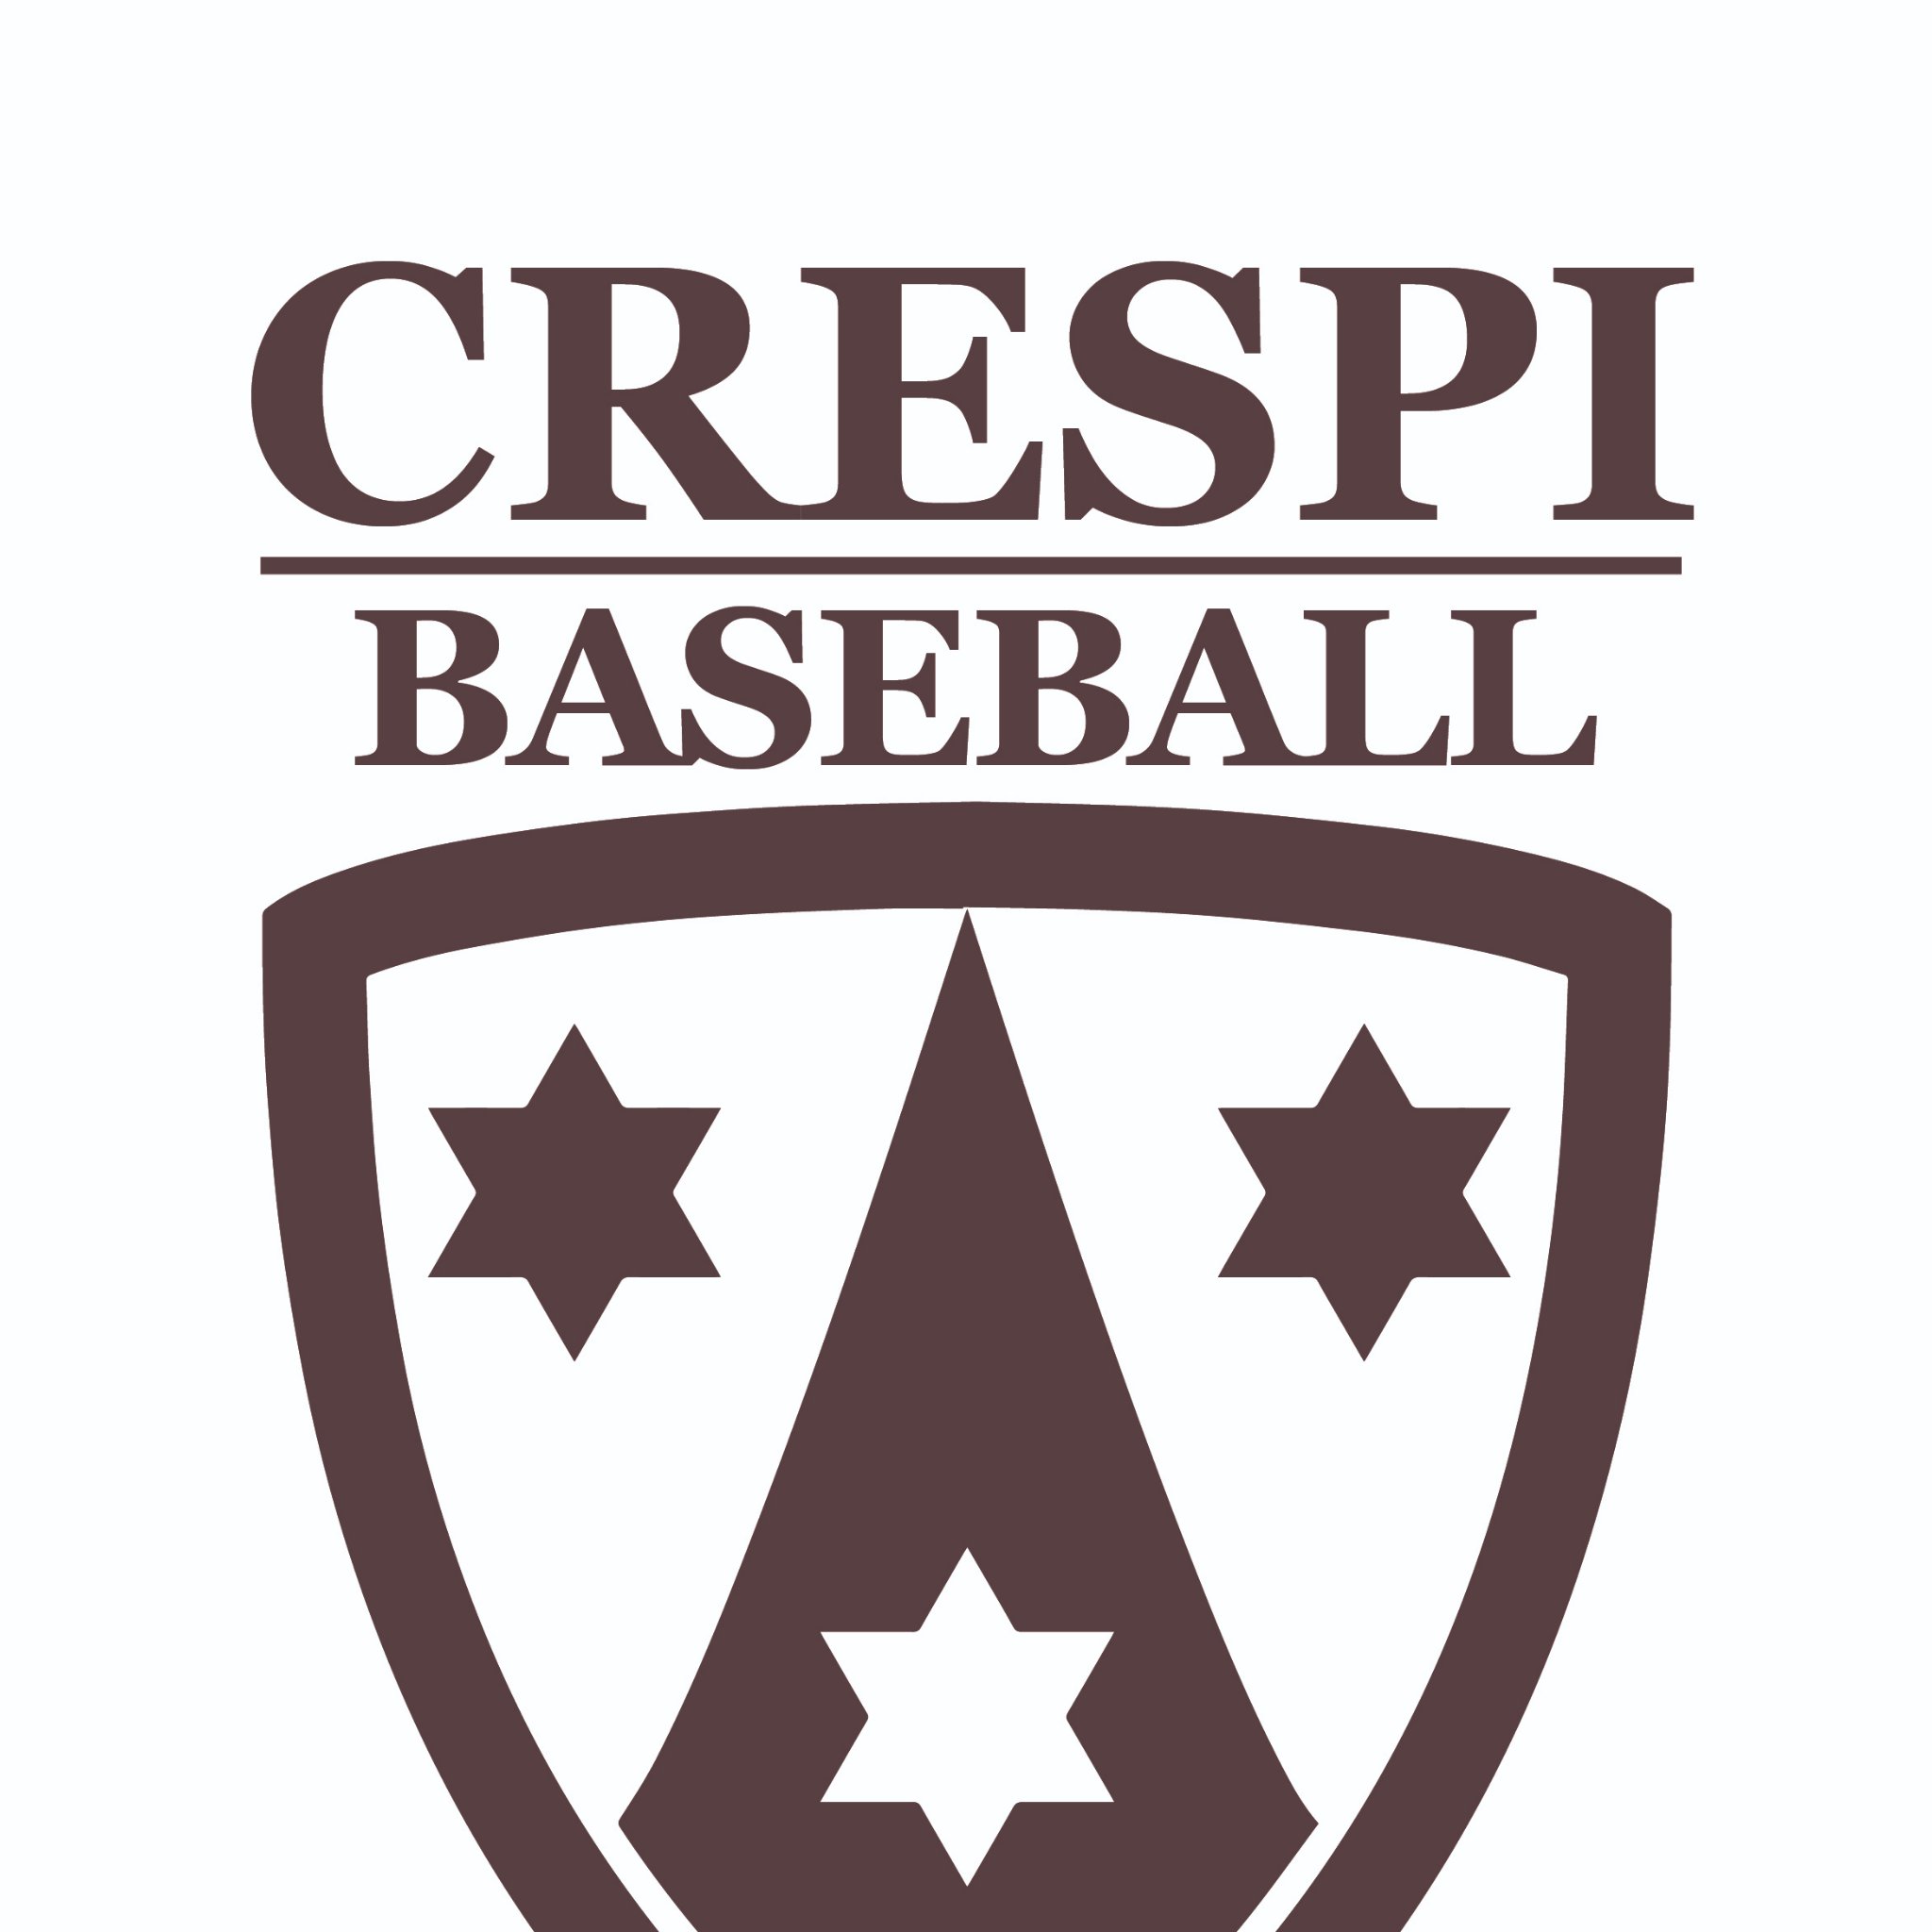 The Official Twitter for the Crespi Carmelite High School baseball team.